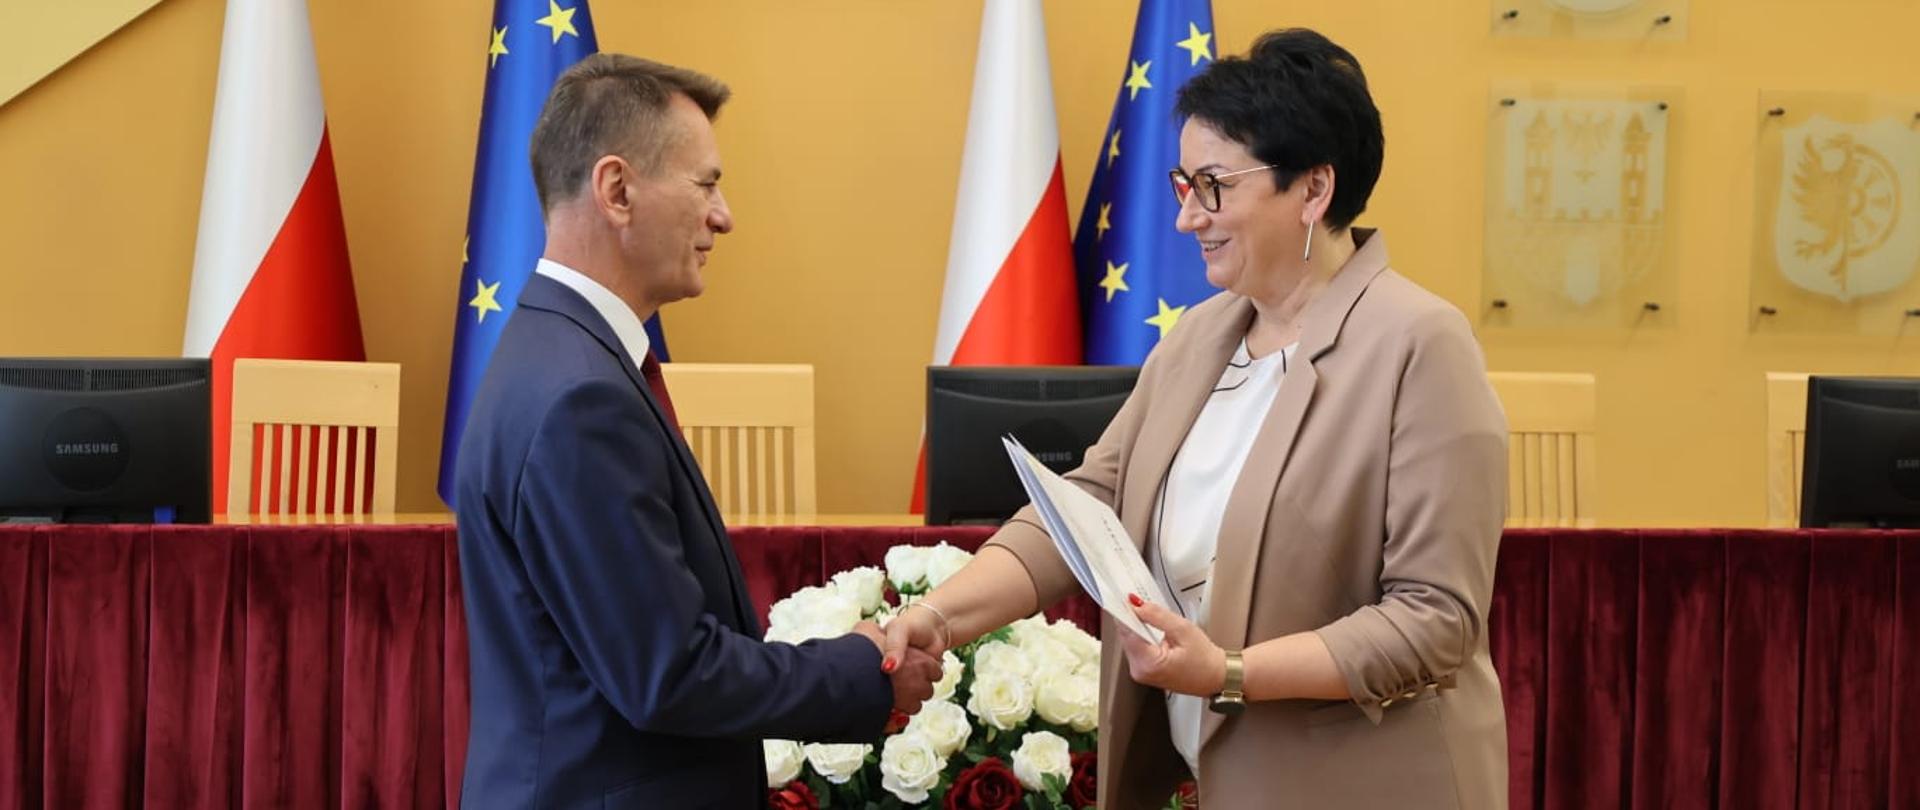 Wojewoda Opolski Monika Jurek wręcza powołanie nowemu wicekuratorowi oświaty, Markowi Leśniakowi. Na zdjęciu widać ich uścisk dłoni. Oboje się uśmiechają. W tle widać flagi Polski i Unii Europejskiej. 